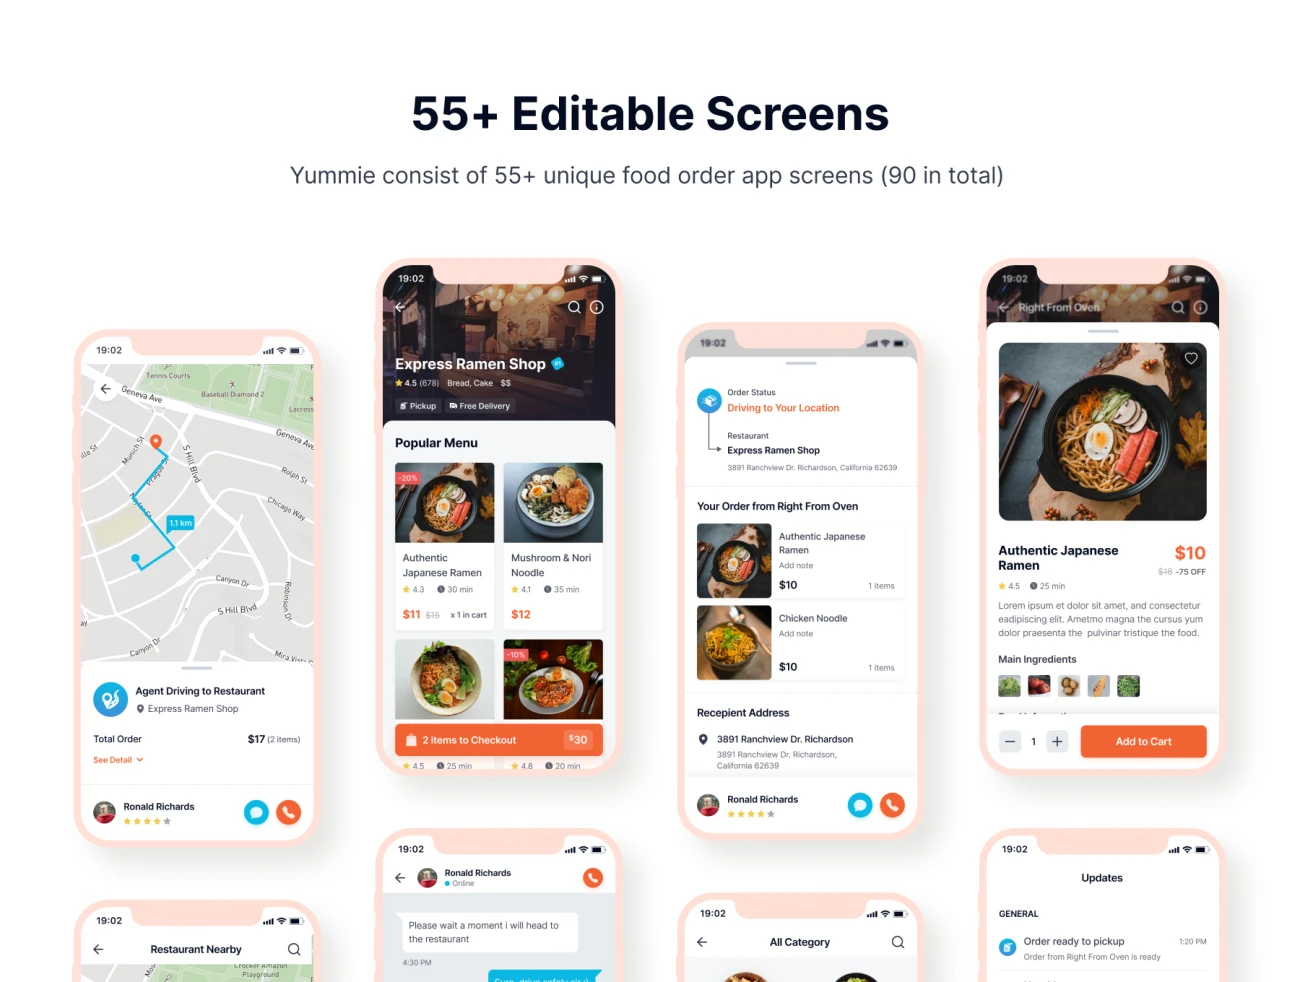 55屏高端美食点餐应用UI设计套件 Yummie Premium Food Order App UI Kit插图5